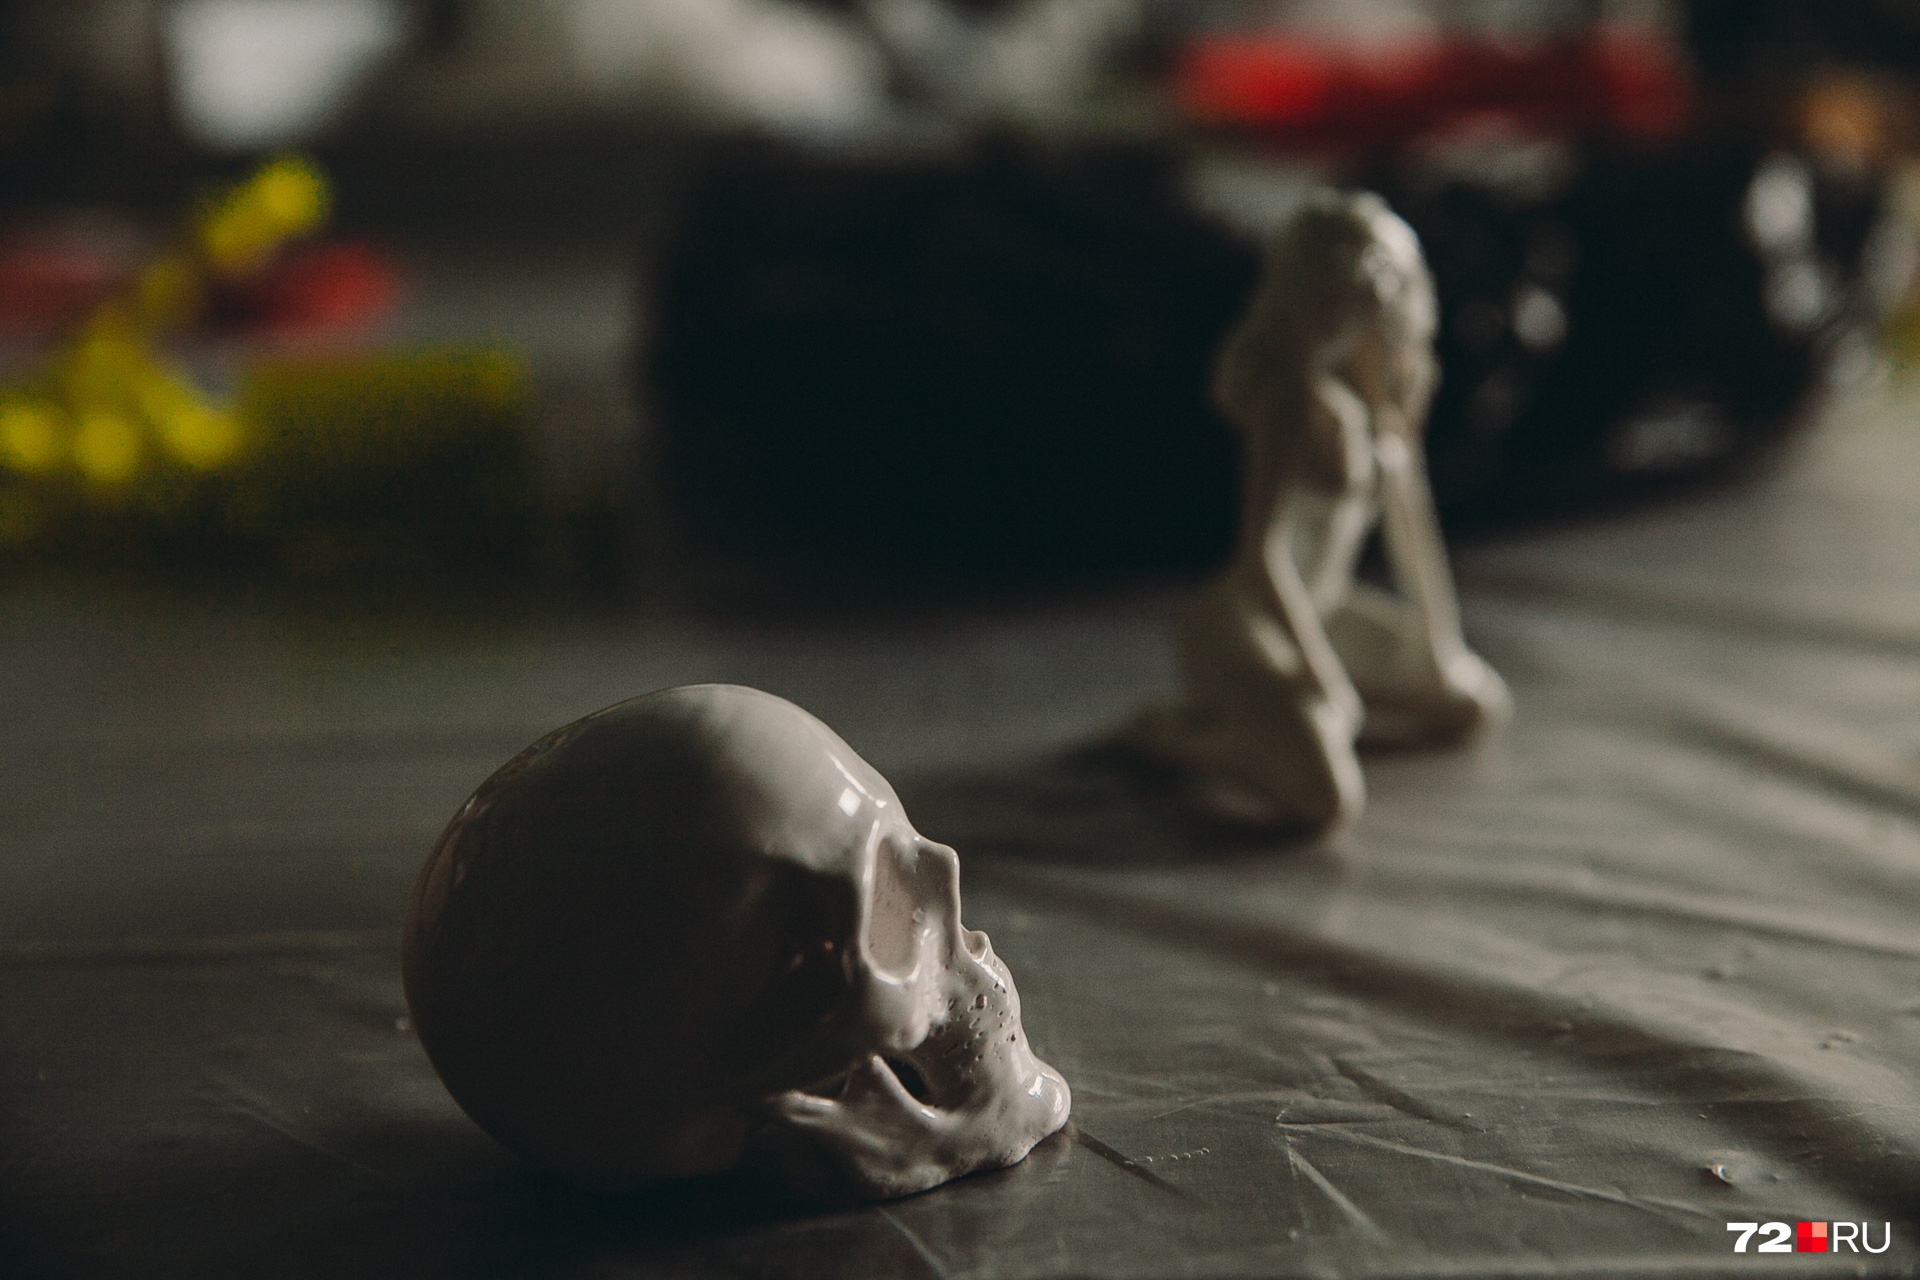 Этот череп тоже напечатан на 3D-принтере и обработан с помощью ацетоновой бани. Выглядит так, будто сделан из фарфора